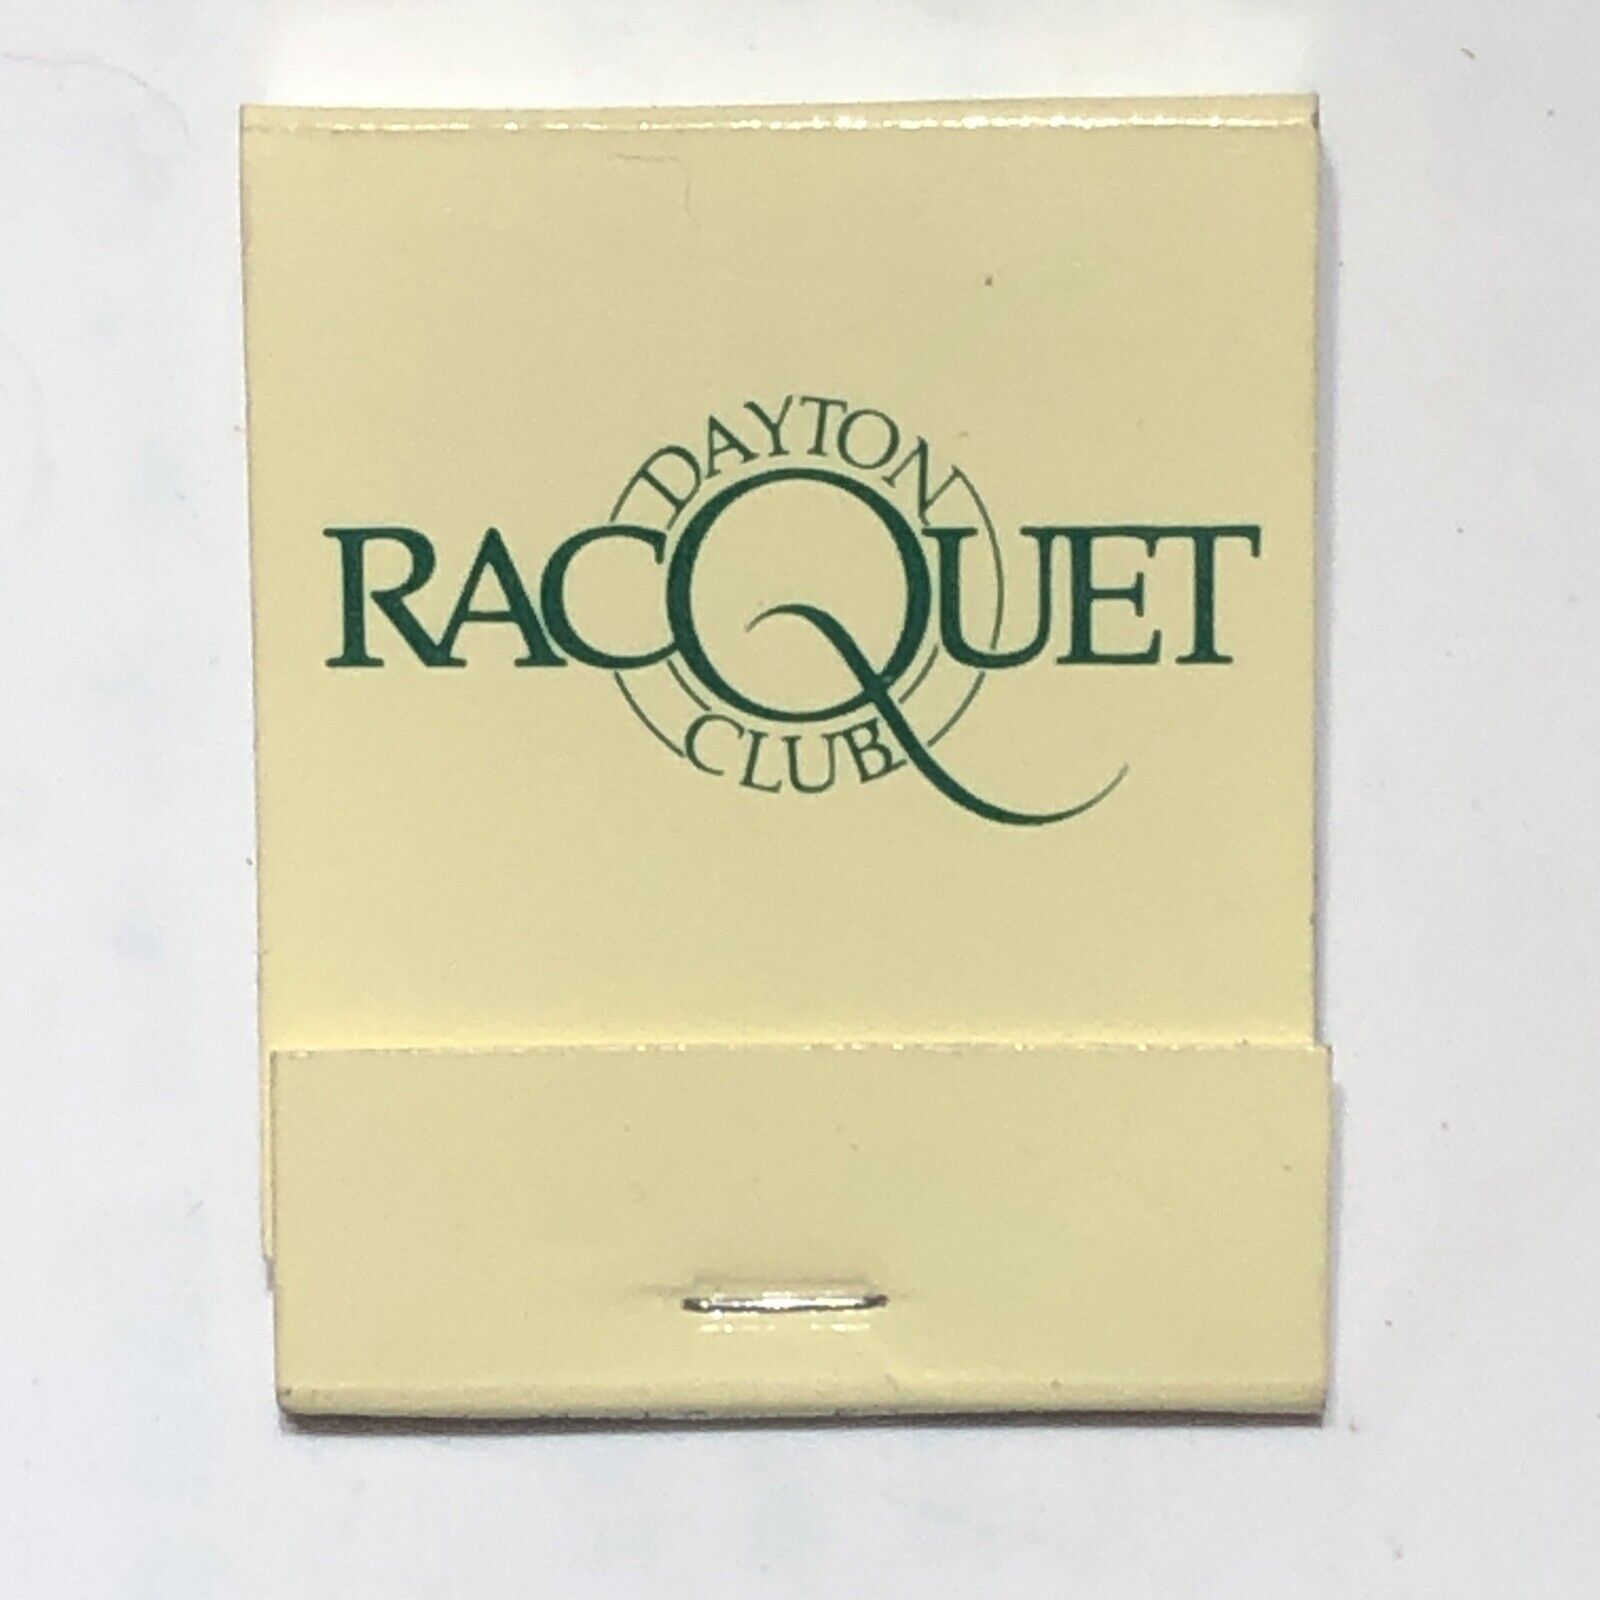 Dayton Racquet Club Racquetball Dayton Ohio Match Book Matchbook